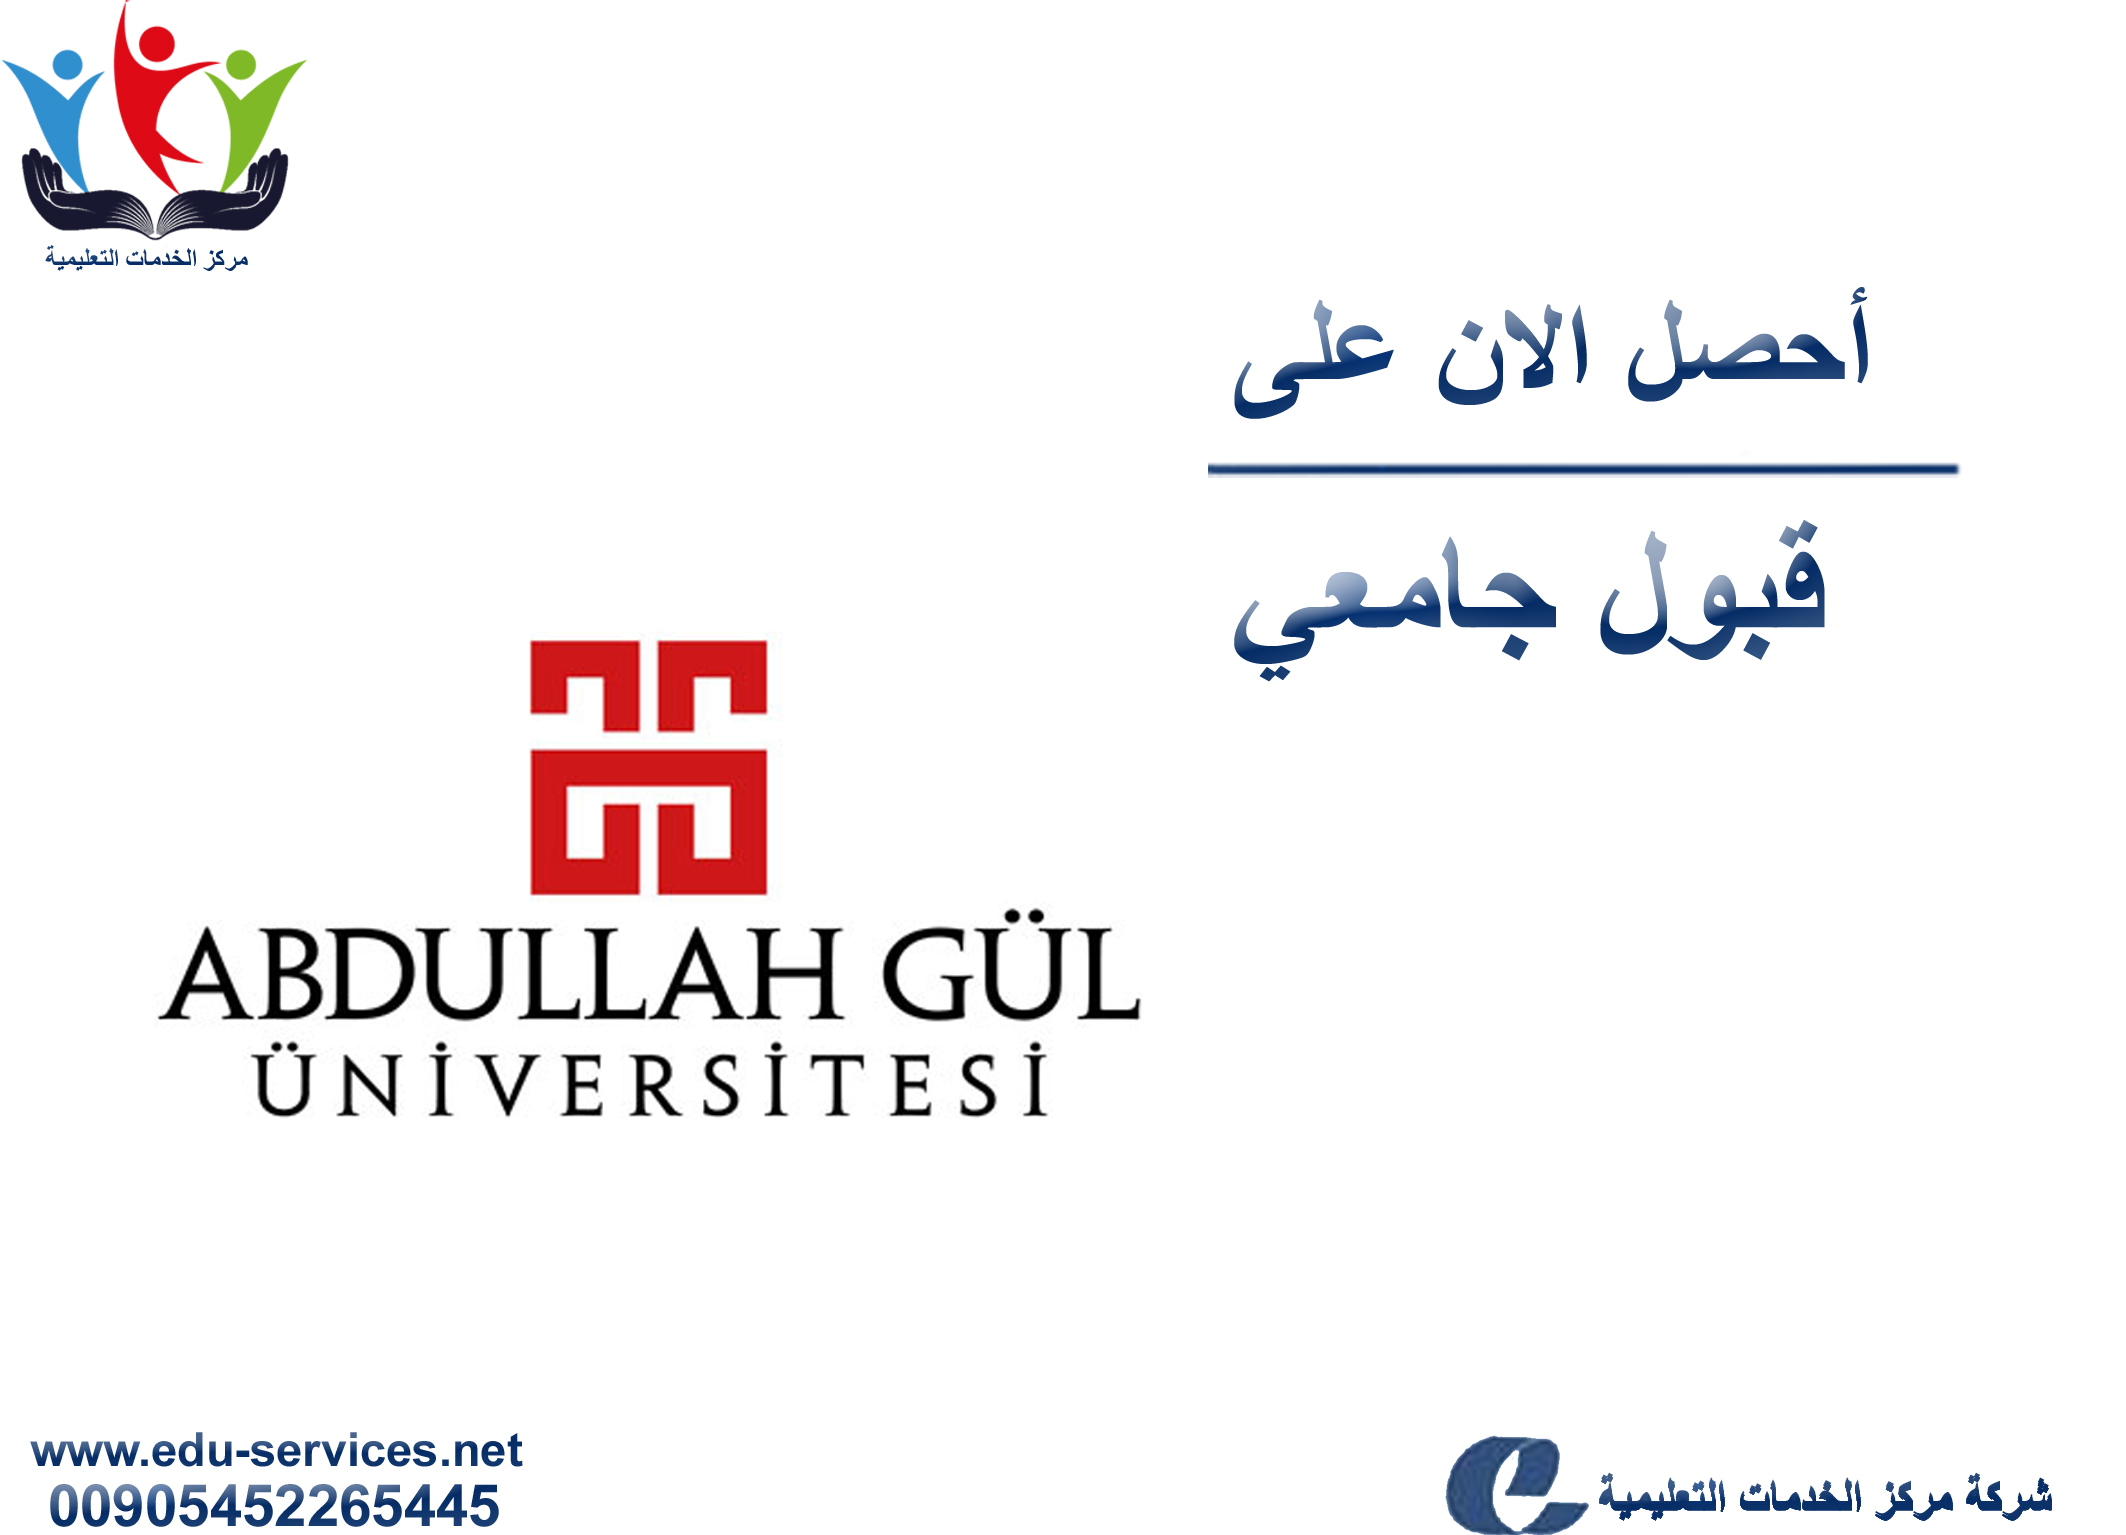 افتتاح التسجيل في جامعة عبد الله غل للعام 2018-2019